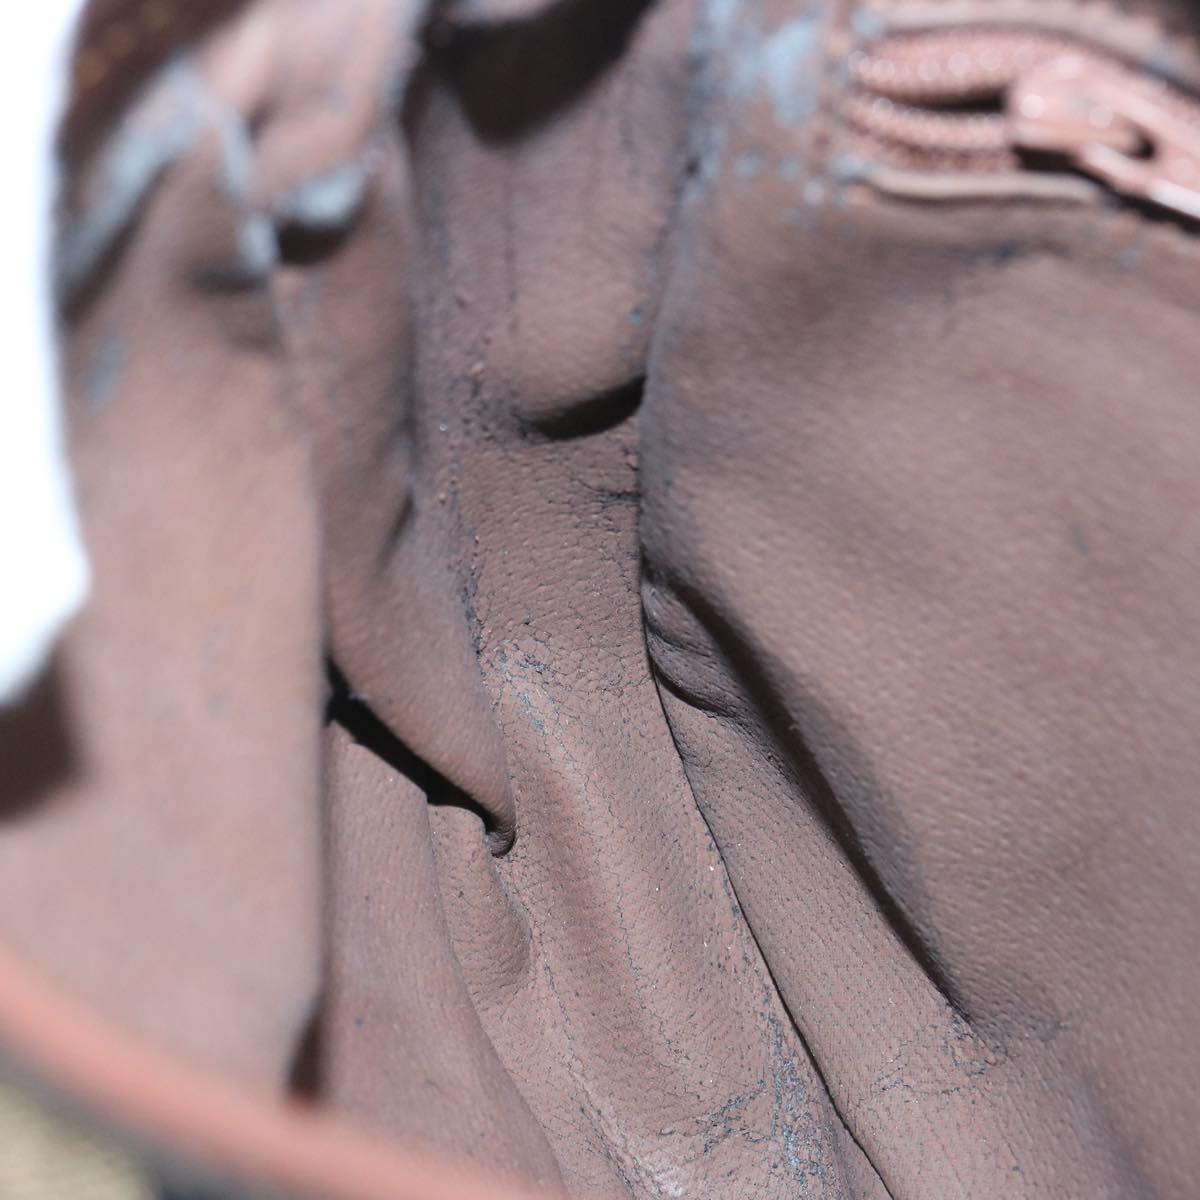 Burberrys Nova Check Shoulder Bag PVC Leather Beige Auth yk10652